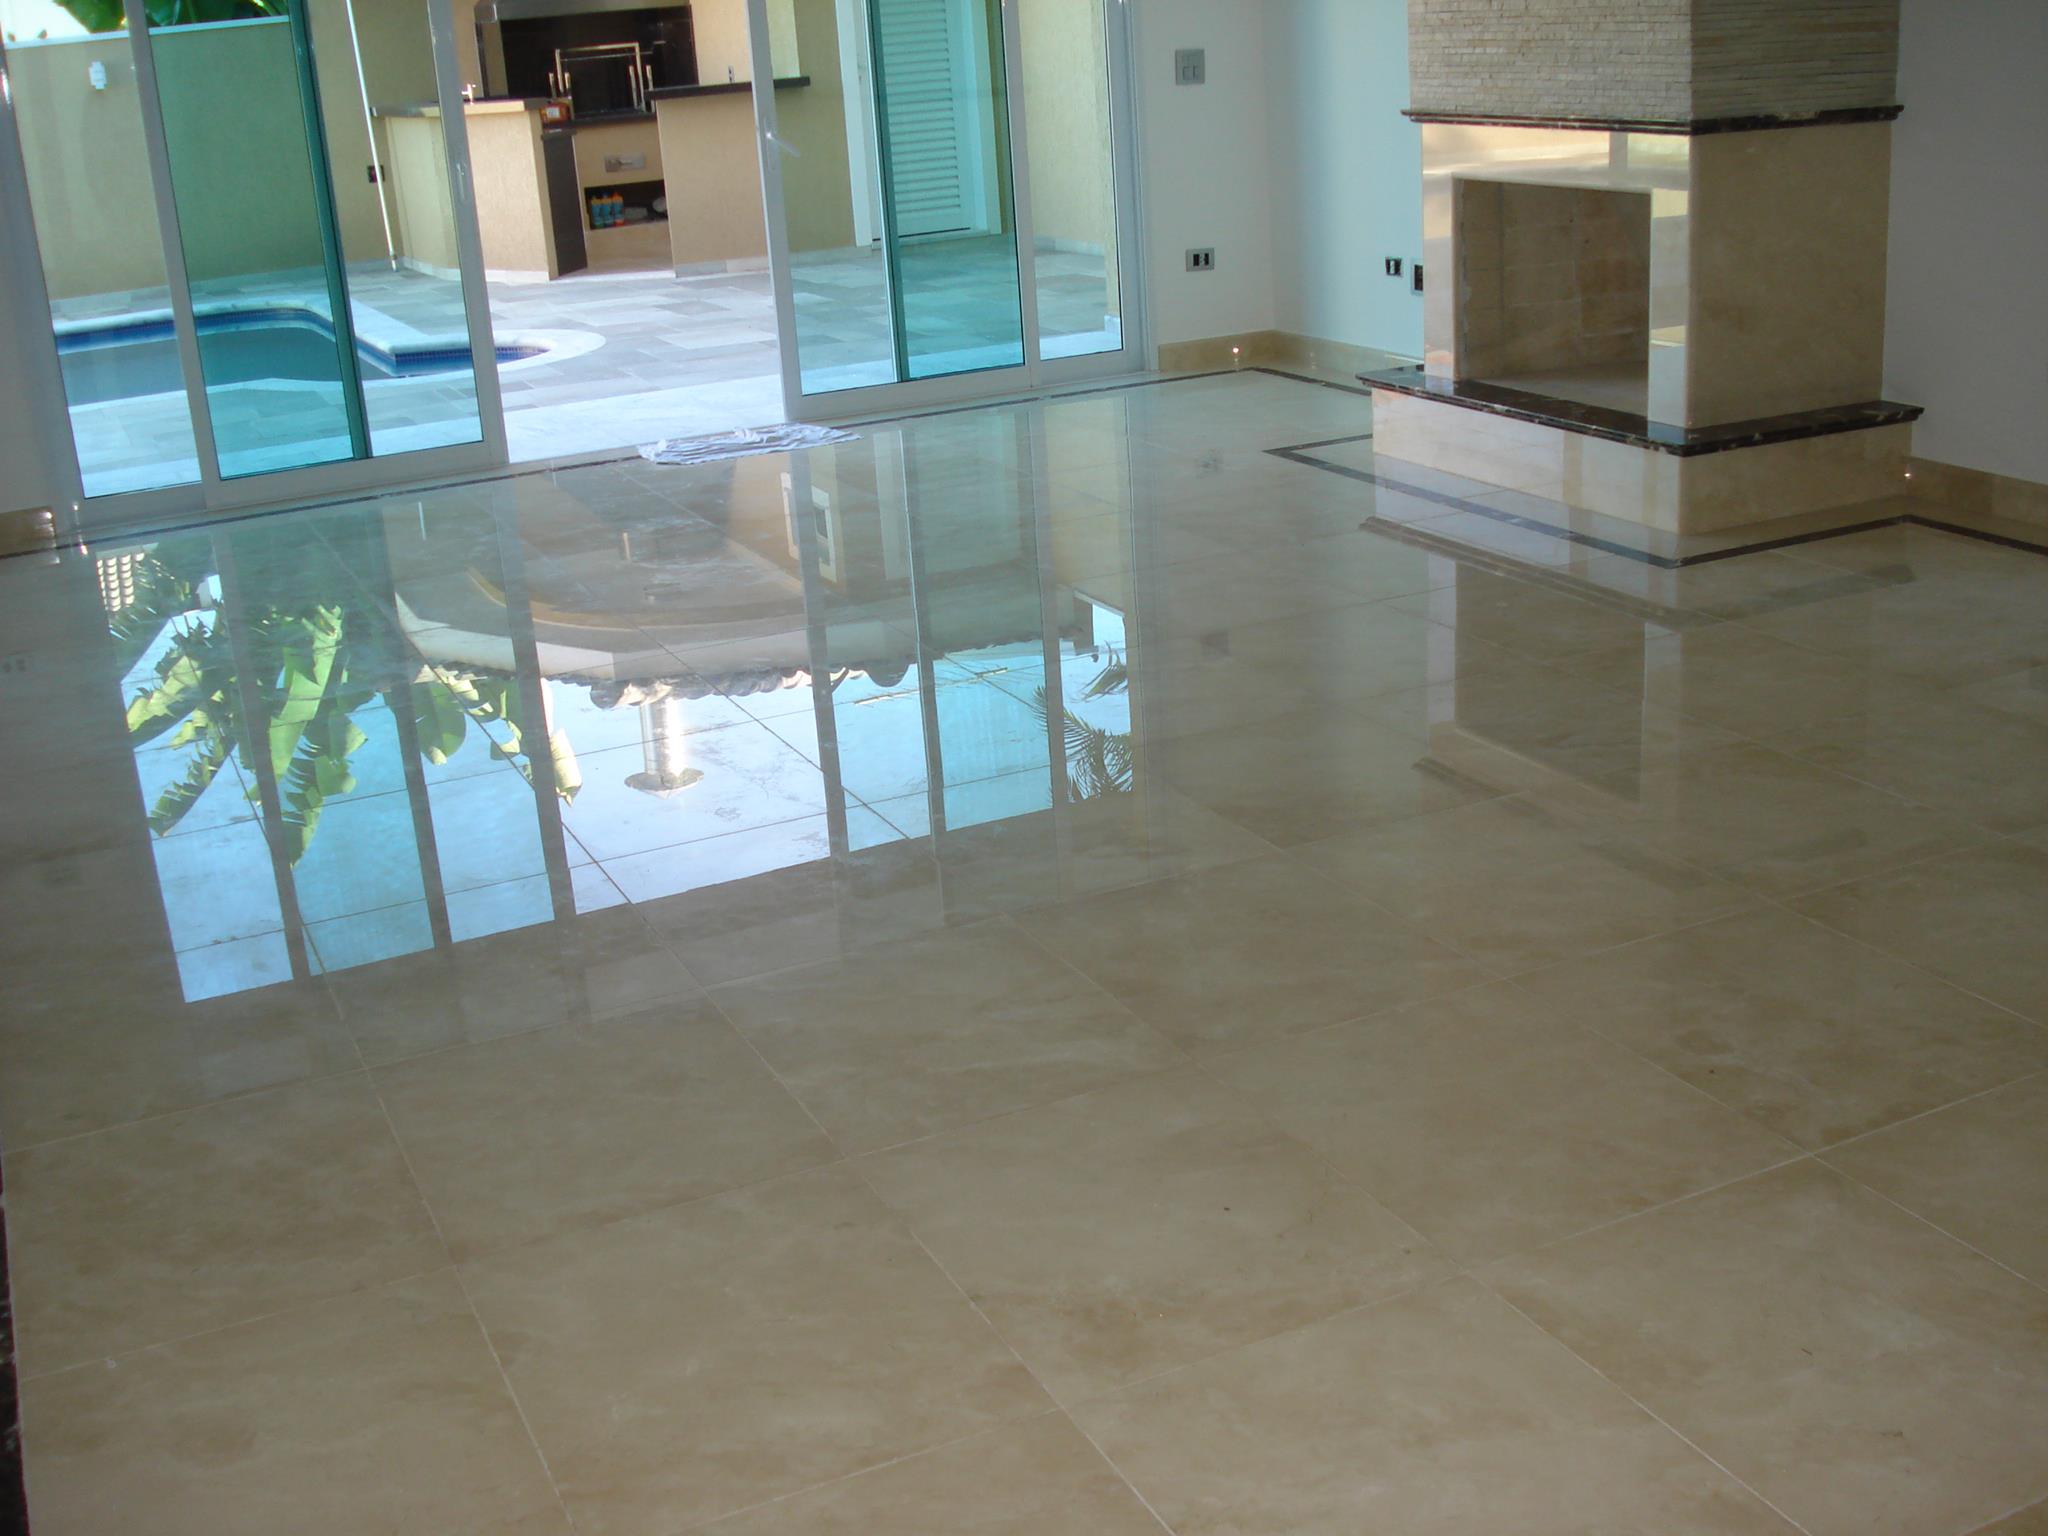 piso e lareira em mármore importado